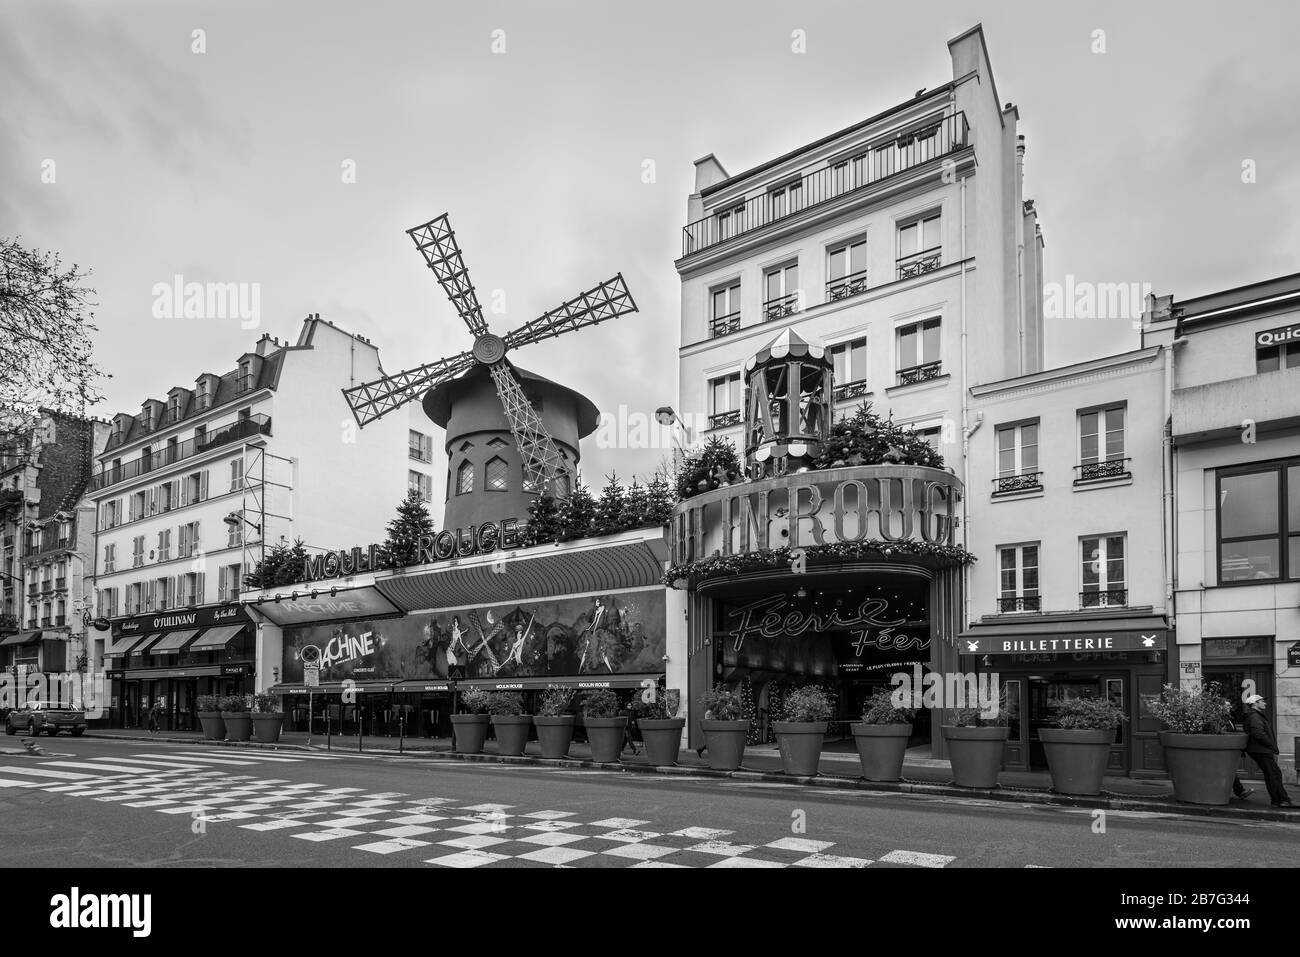 Paris, France - 23 décembre 2018 : le Moulin Rouge à Paris, France. Le Moulin Rouge est un célèbre cabaret construit en 1889, situé dans le feu rouge de Paris Banque D'Images